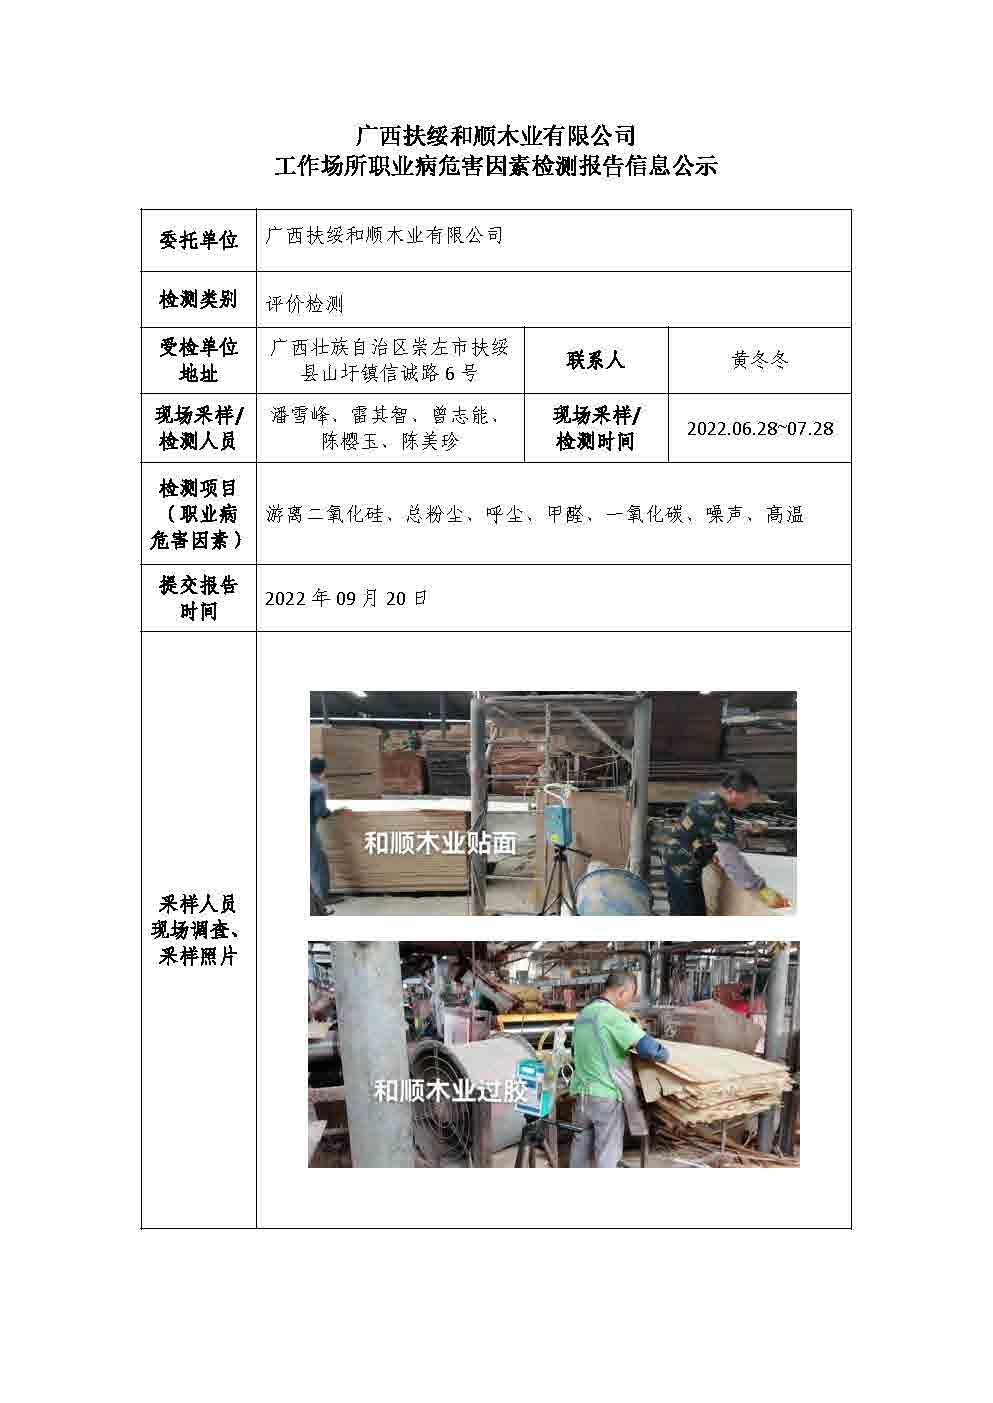 广西扶绥和顺木业有限公司工作场所职业病危害因素检测报告信息公示